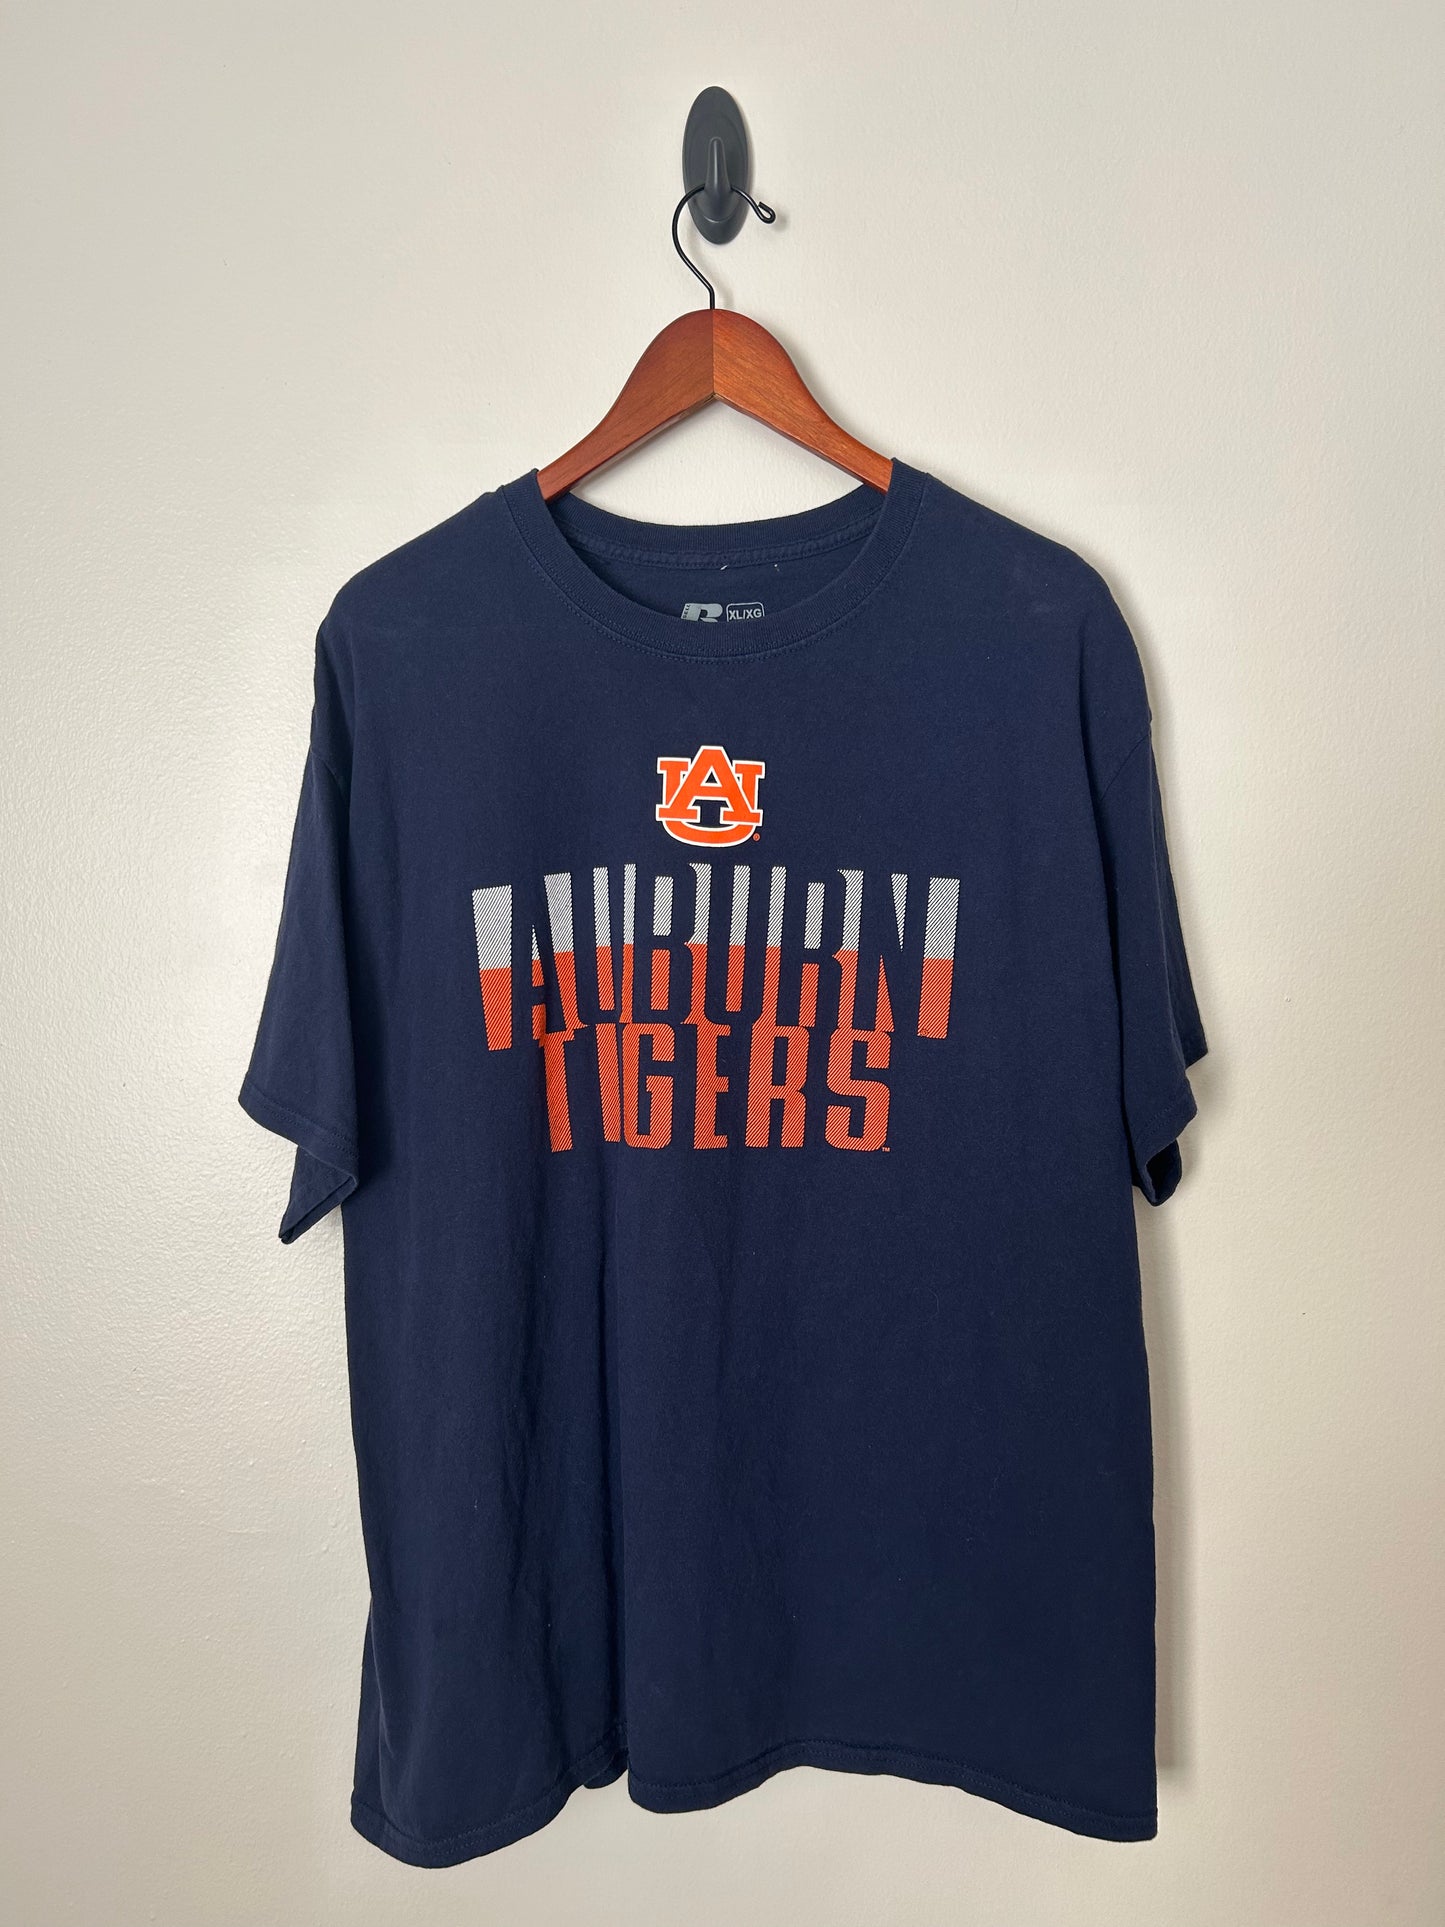 Auburn Tigers Football T-Shirt - XL